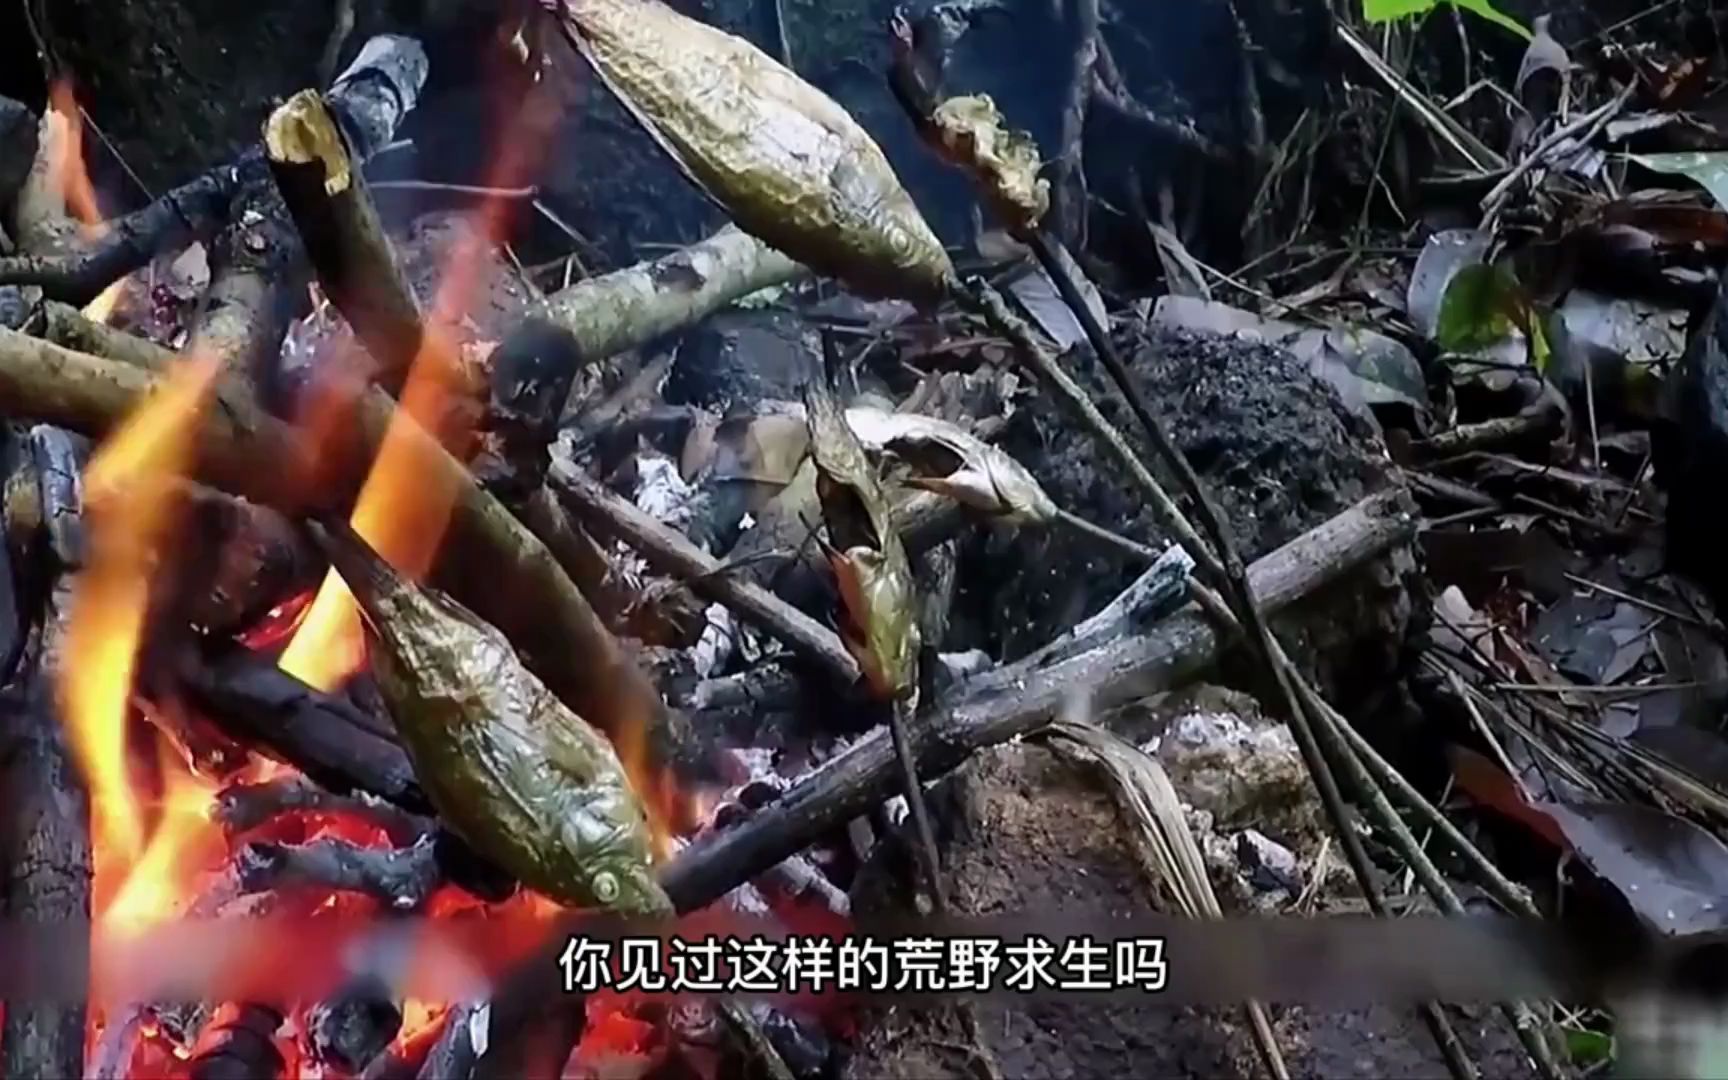 中国内地荒野求生第一人麻雀姐, 全裸东南亚原始丛林生存100天